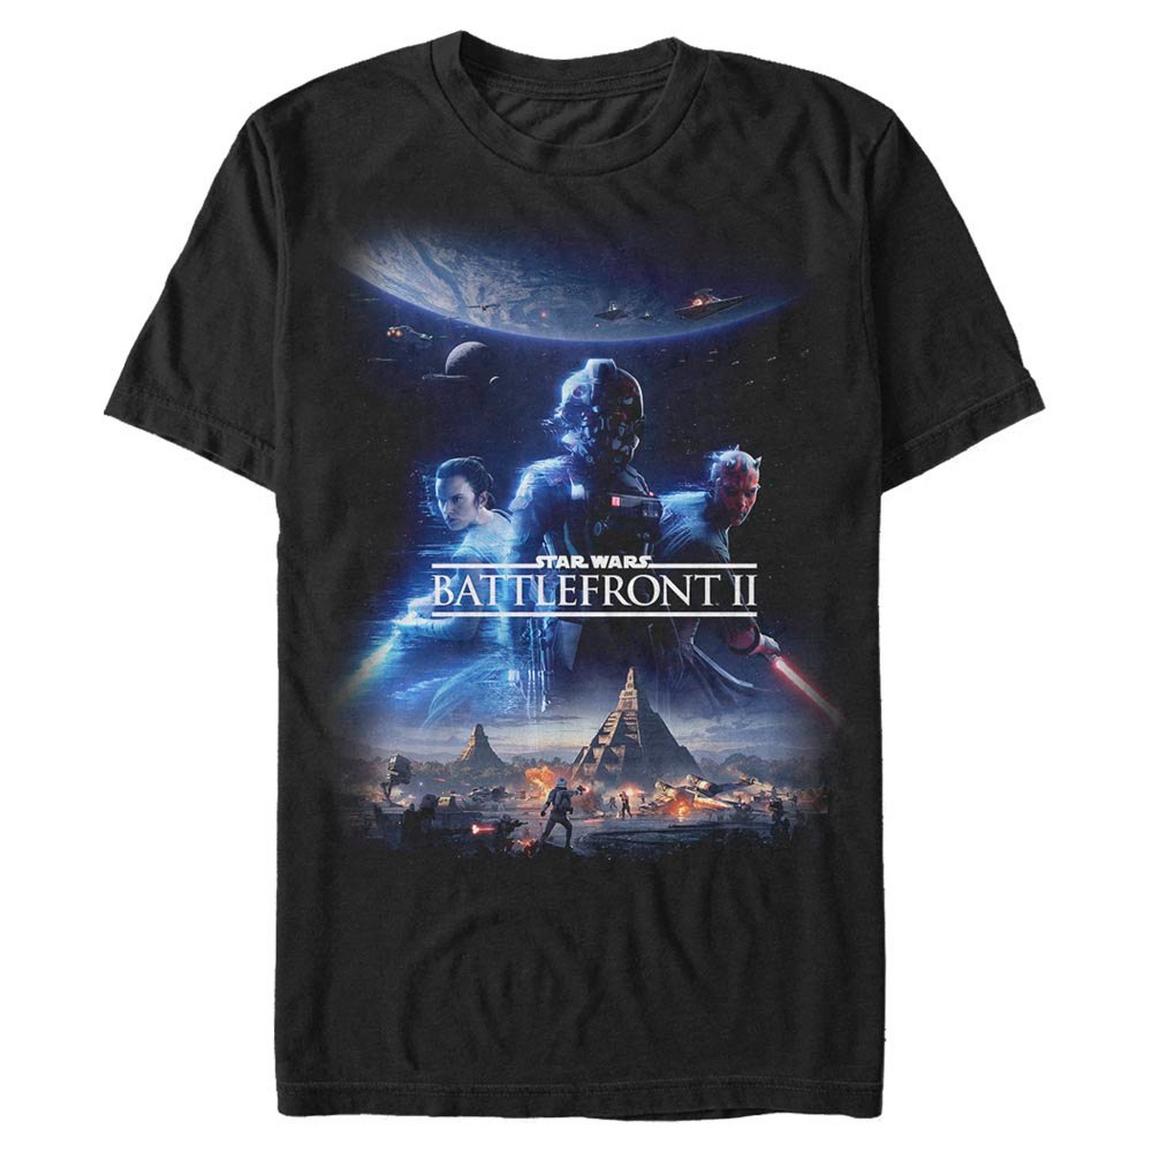 Star Wars Battlefront II Poster T-Shirt, Size: 3XL, Fifth Sun